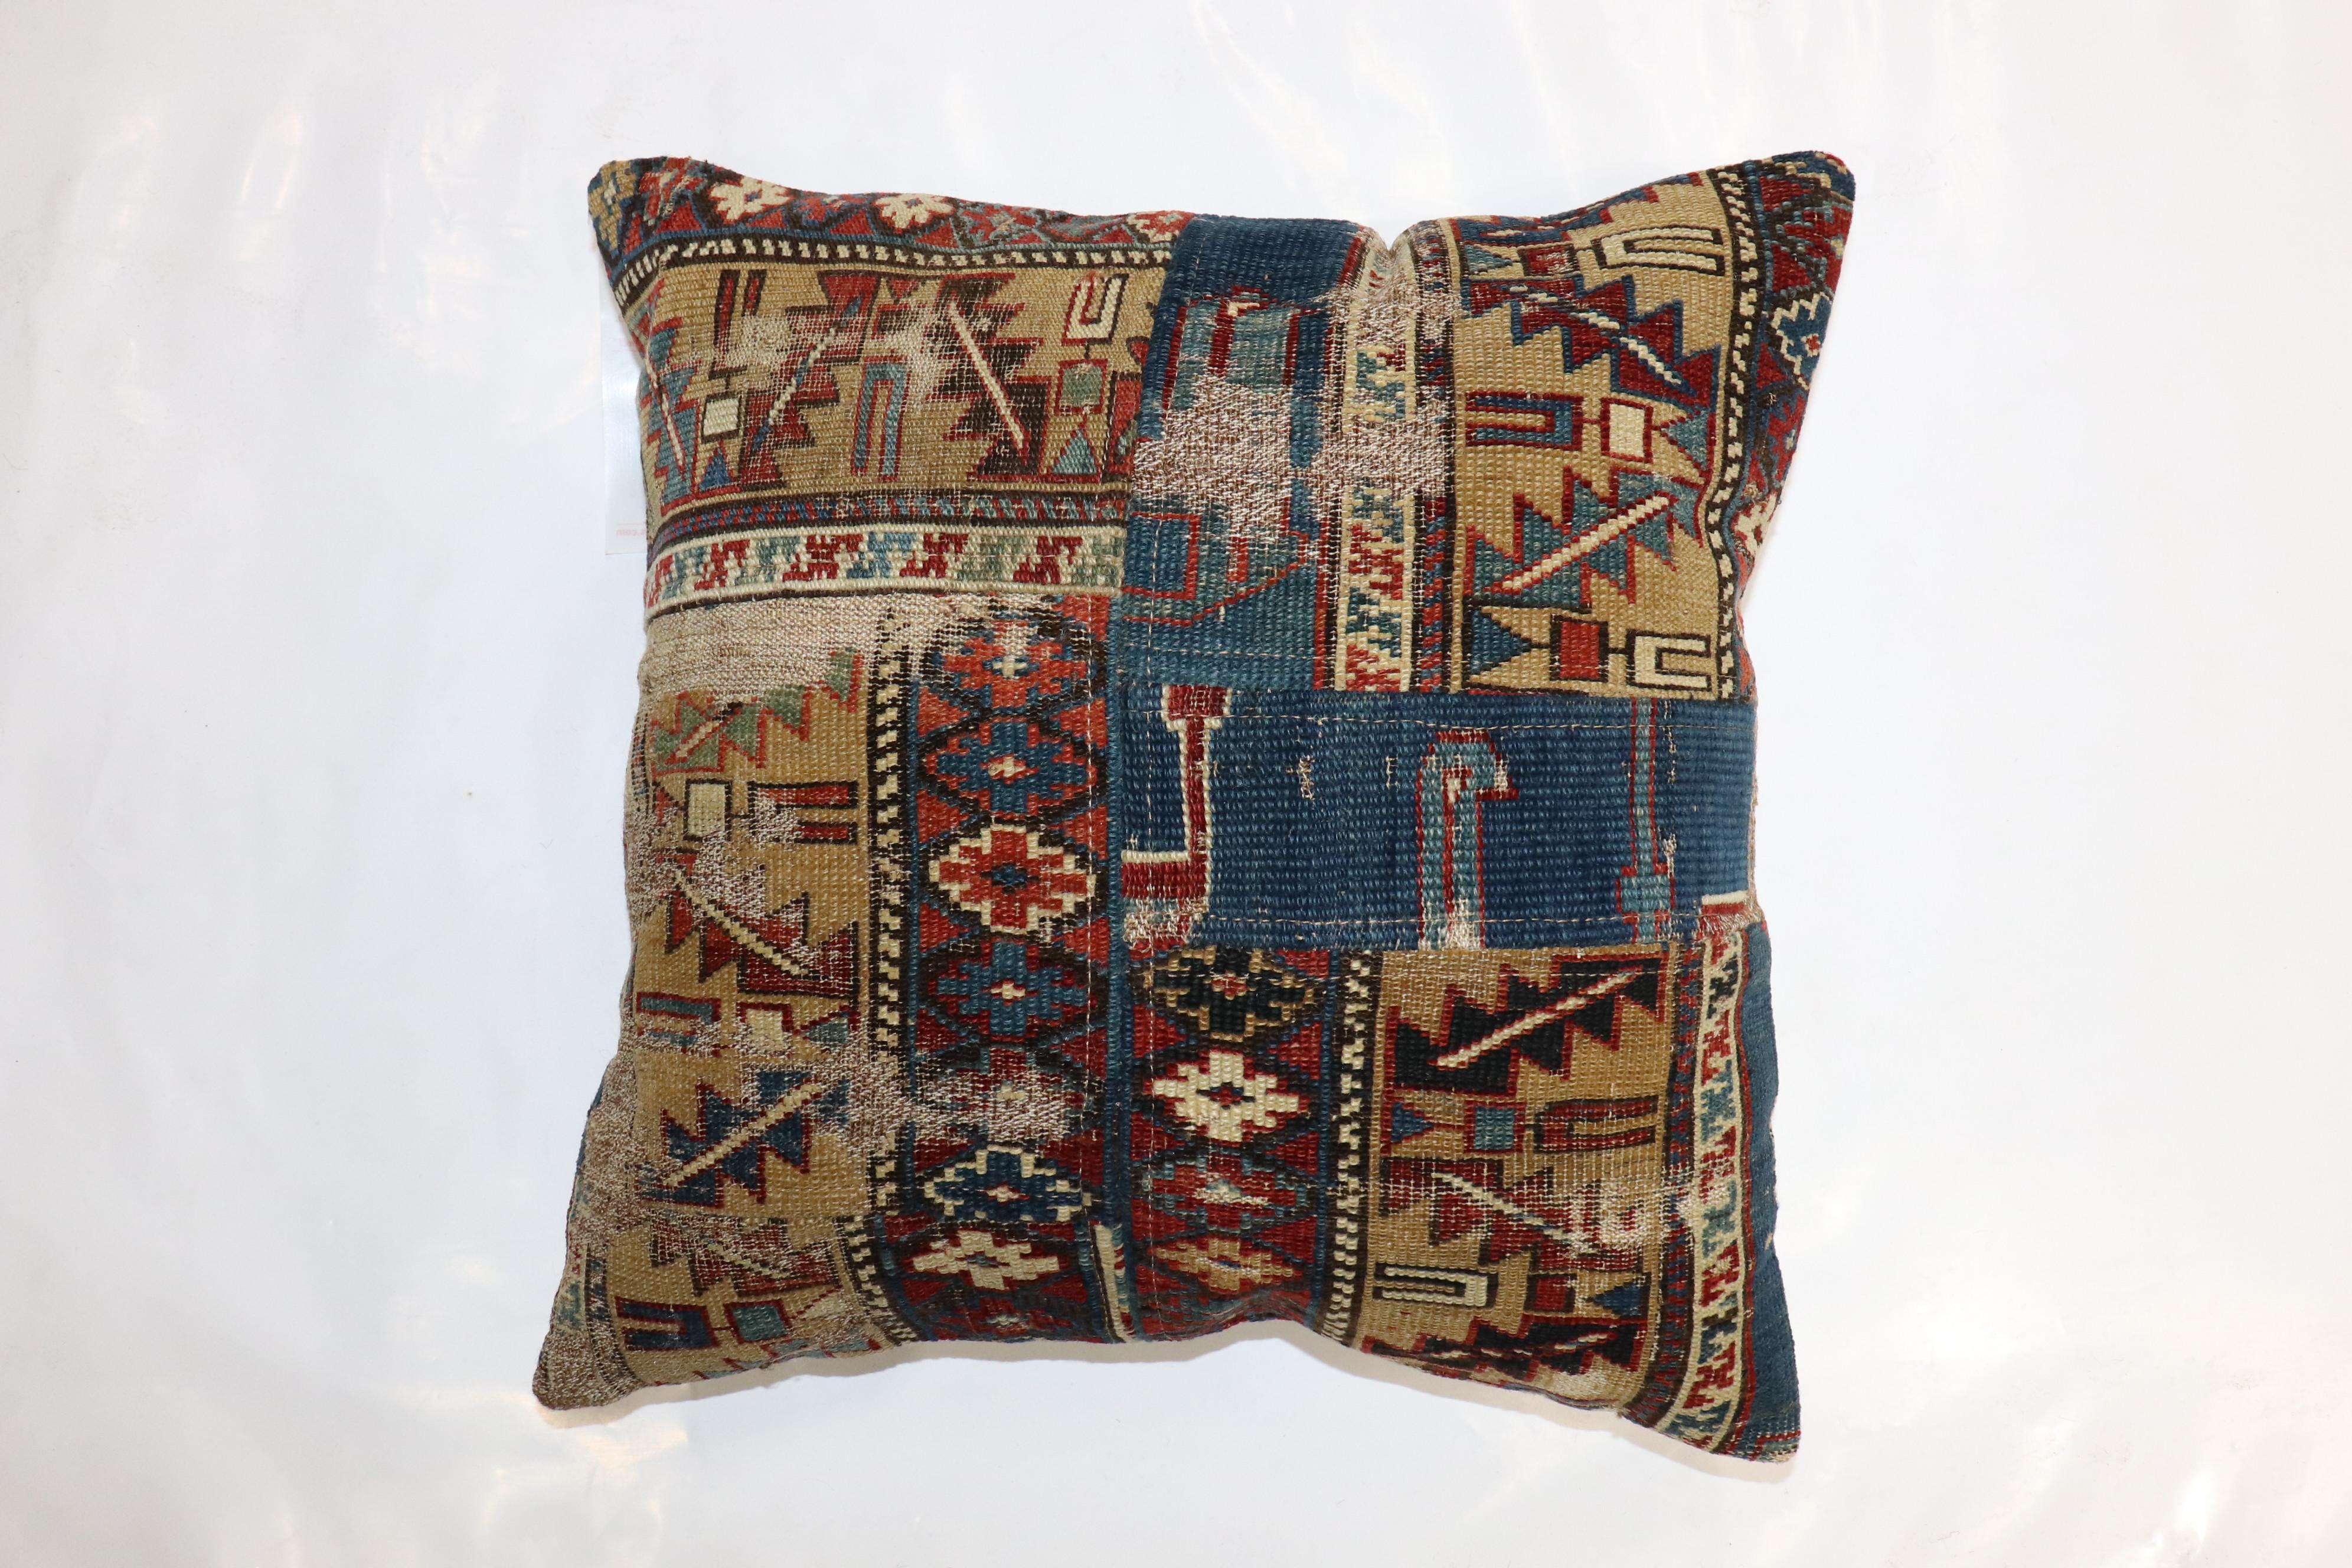 Kissen aus einem kaukasischen Teppich aus dem 19. Jahrhundert im Patchwork-Format mit Baumwollrücken und Reißverschluss.

Maße: 18'' x 18''.